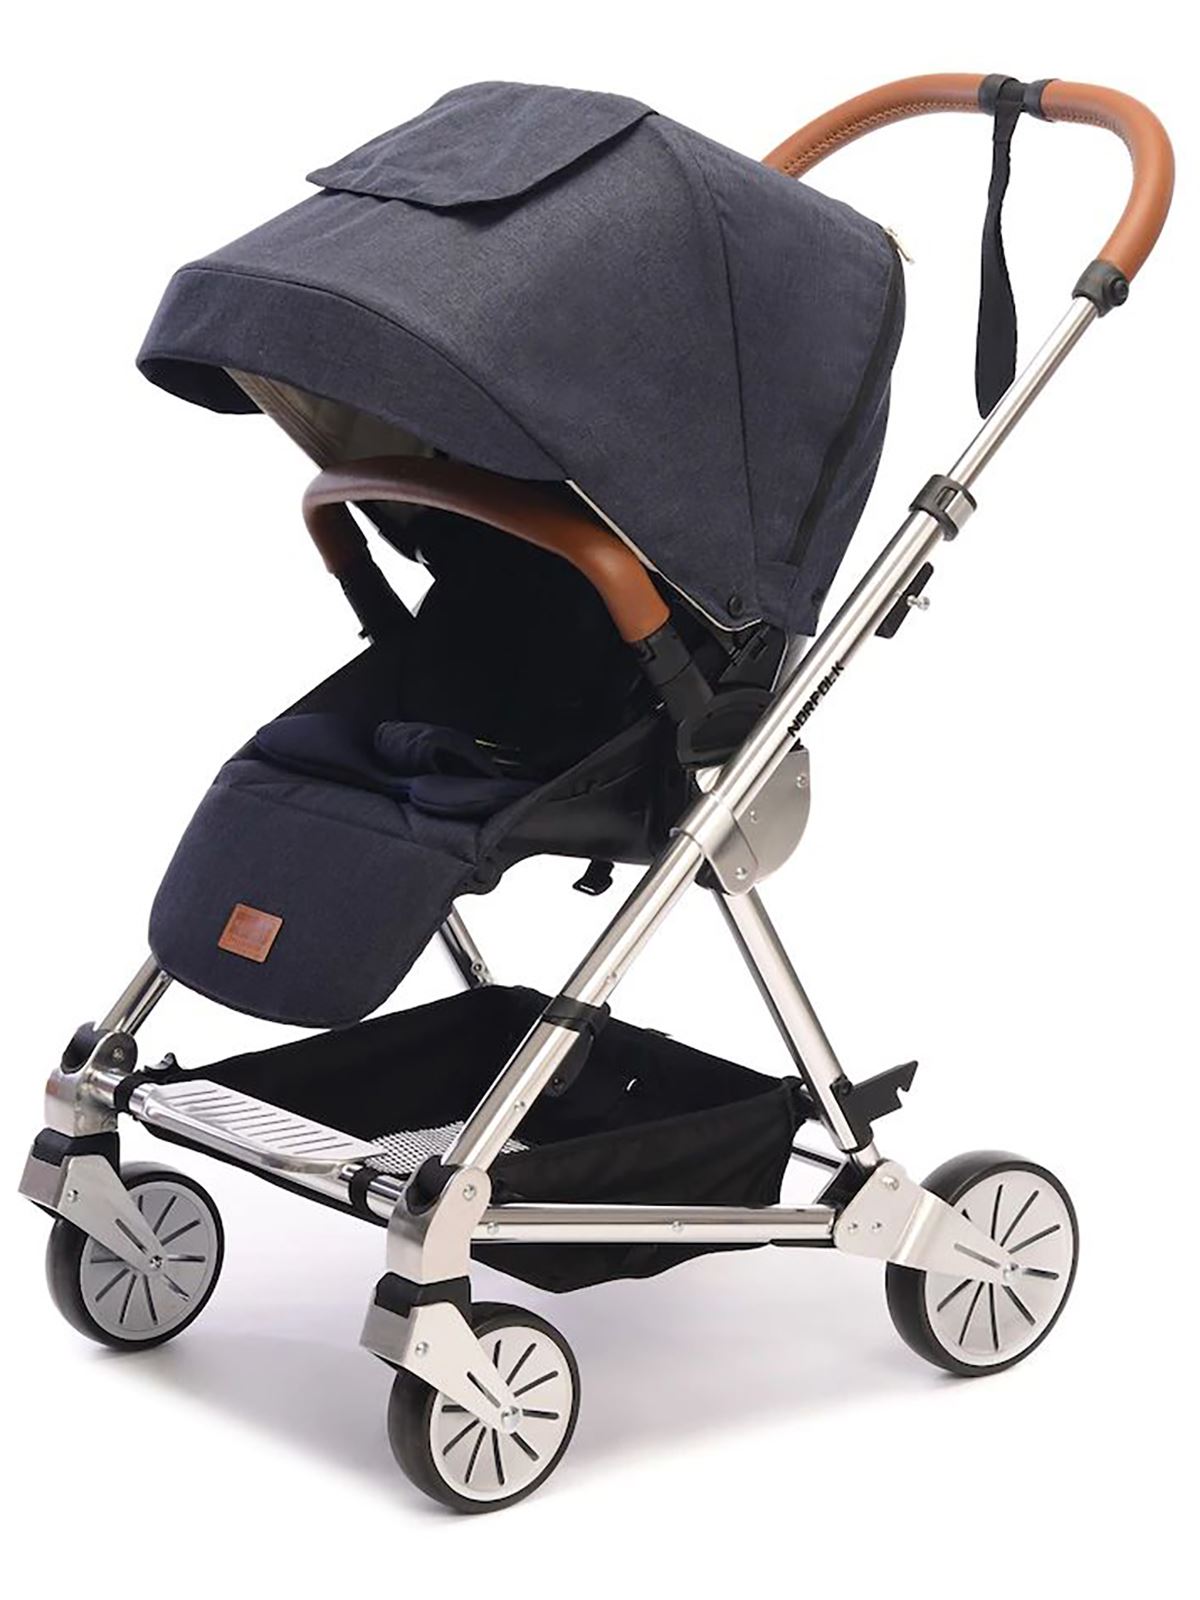 Norfolk Baby Prelude Special Edition Air Luxury Çift Yönlü Bebek Arabası Lacivert